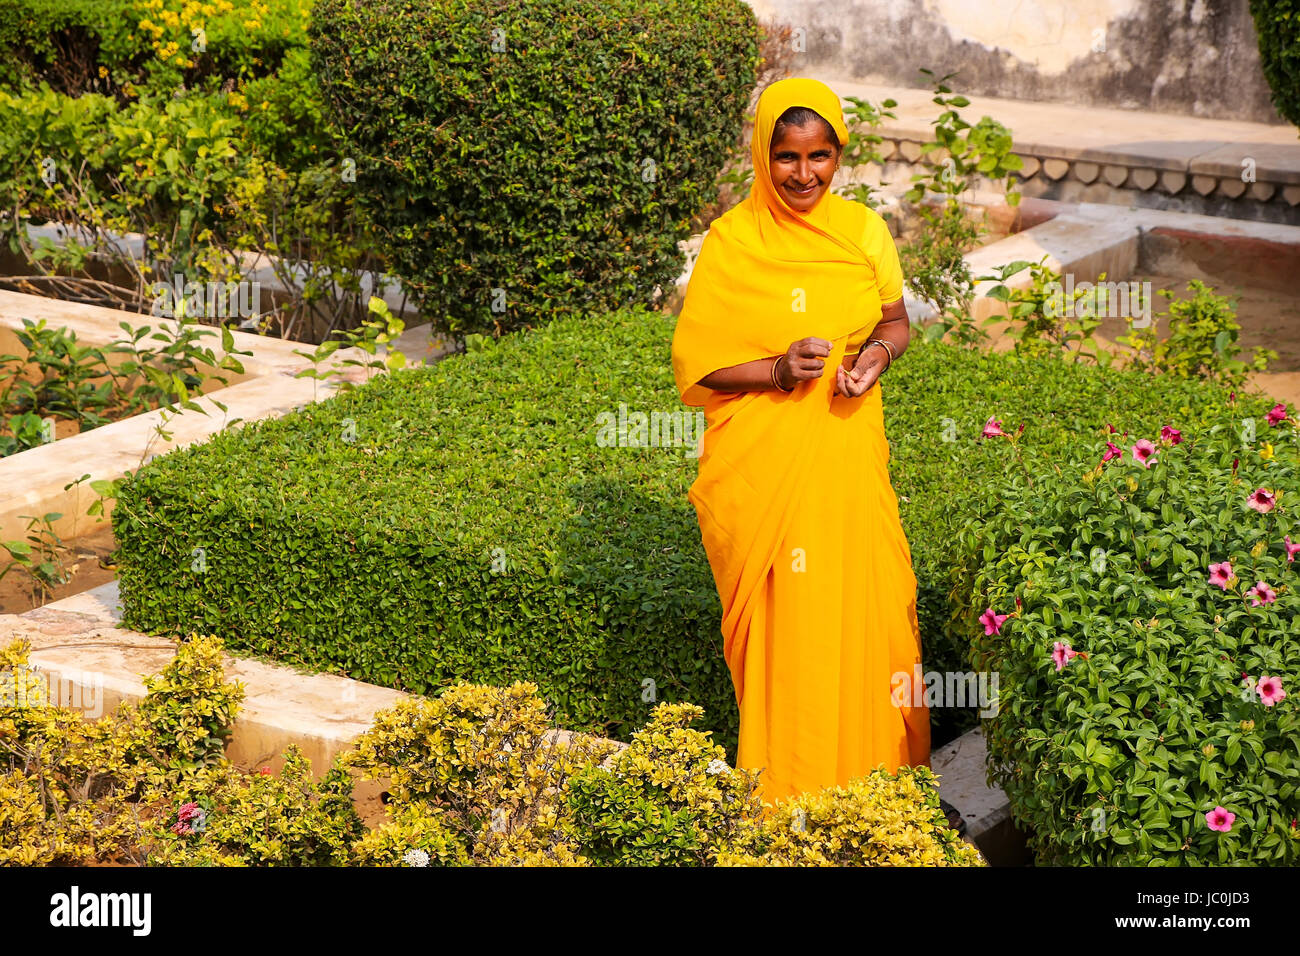 Femme marche à travers le jardin en troisième cour du Fort Amber, Rajasthan, Inde. Fort Amber est la principale attraction touristique dans la région de Jaipur. Banque D'Images